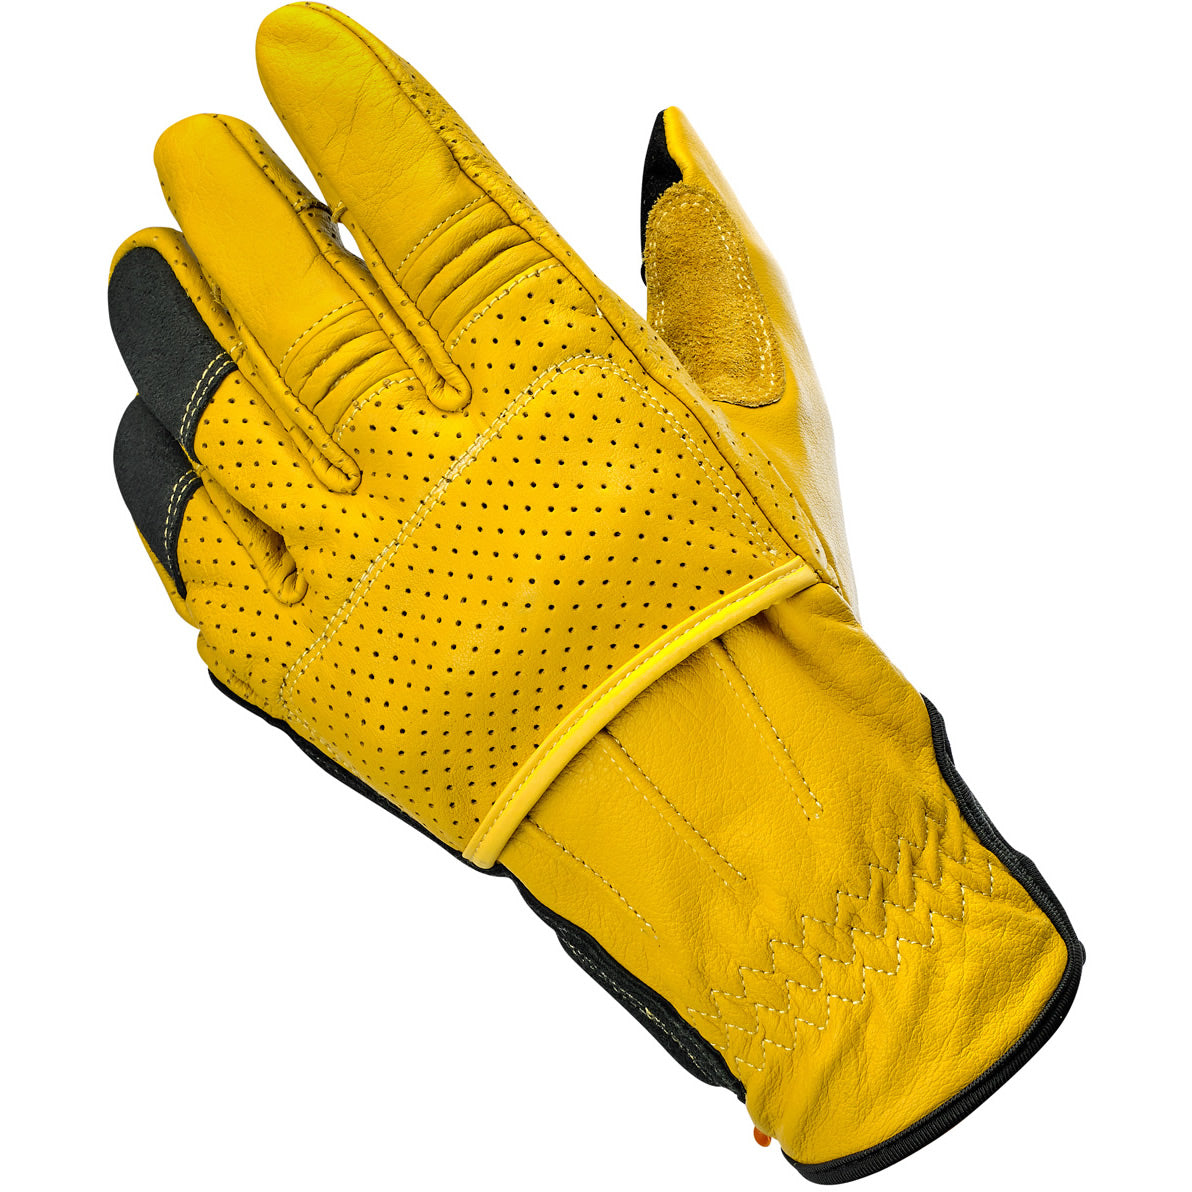 Biltwell - Work Gloves 2.0 - Gold